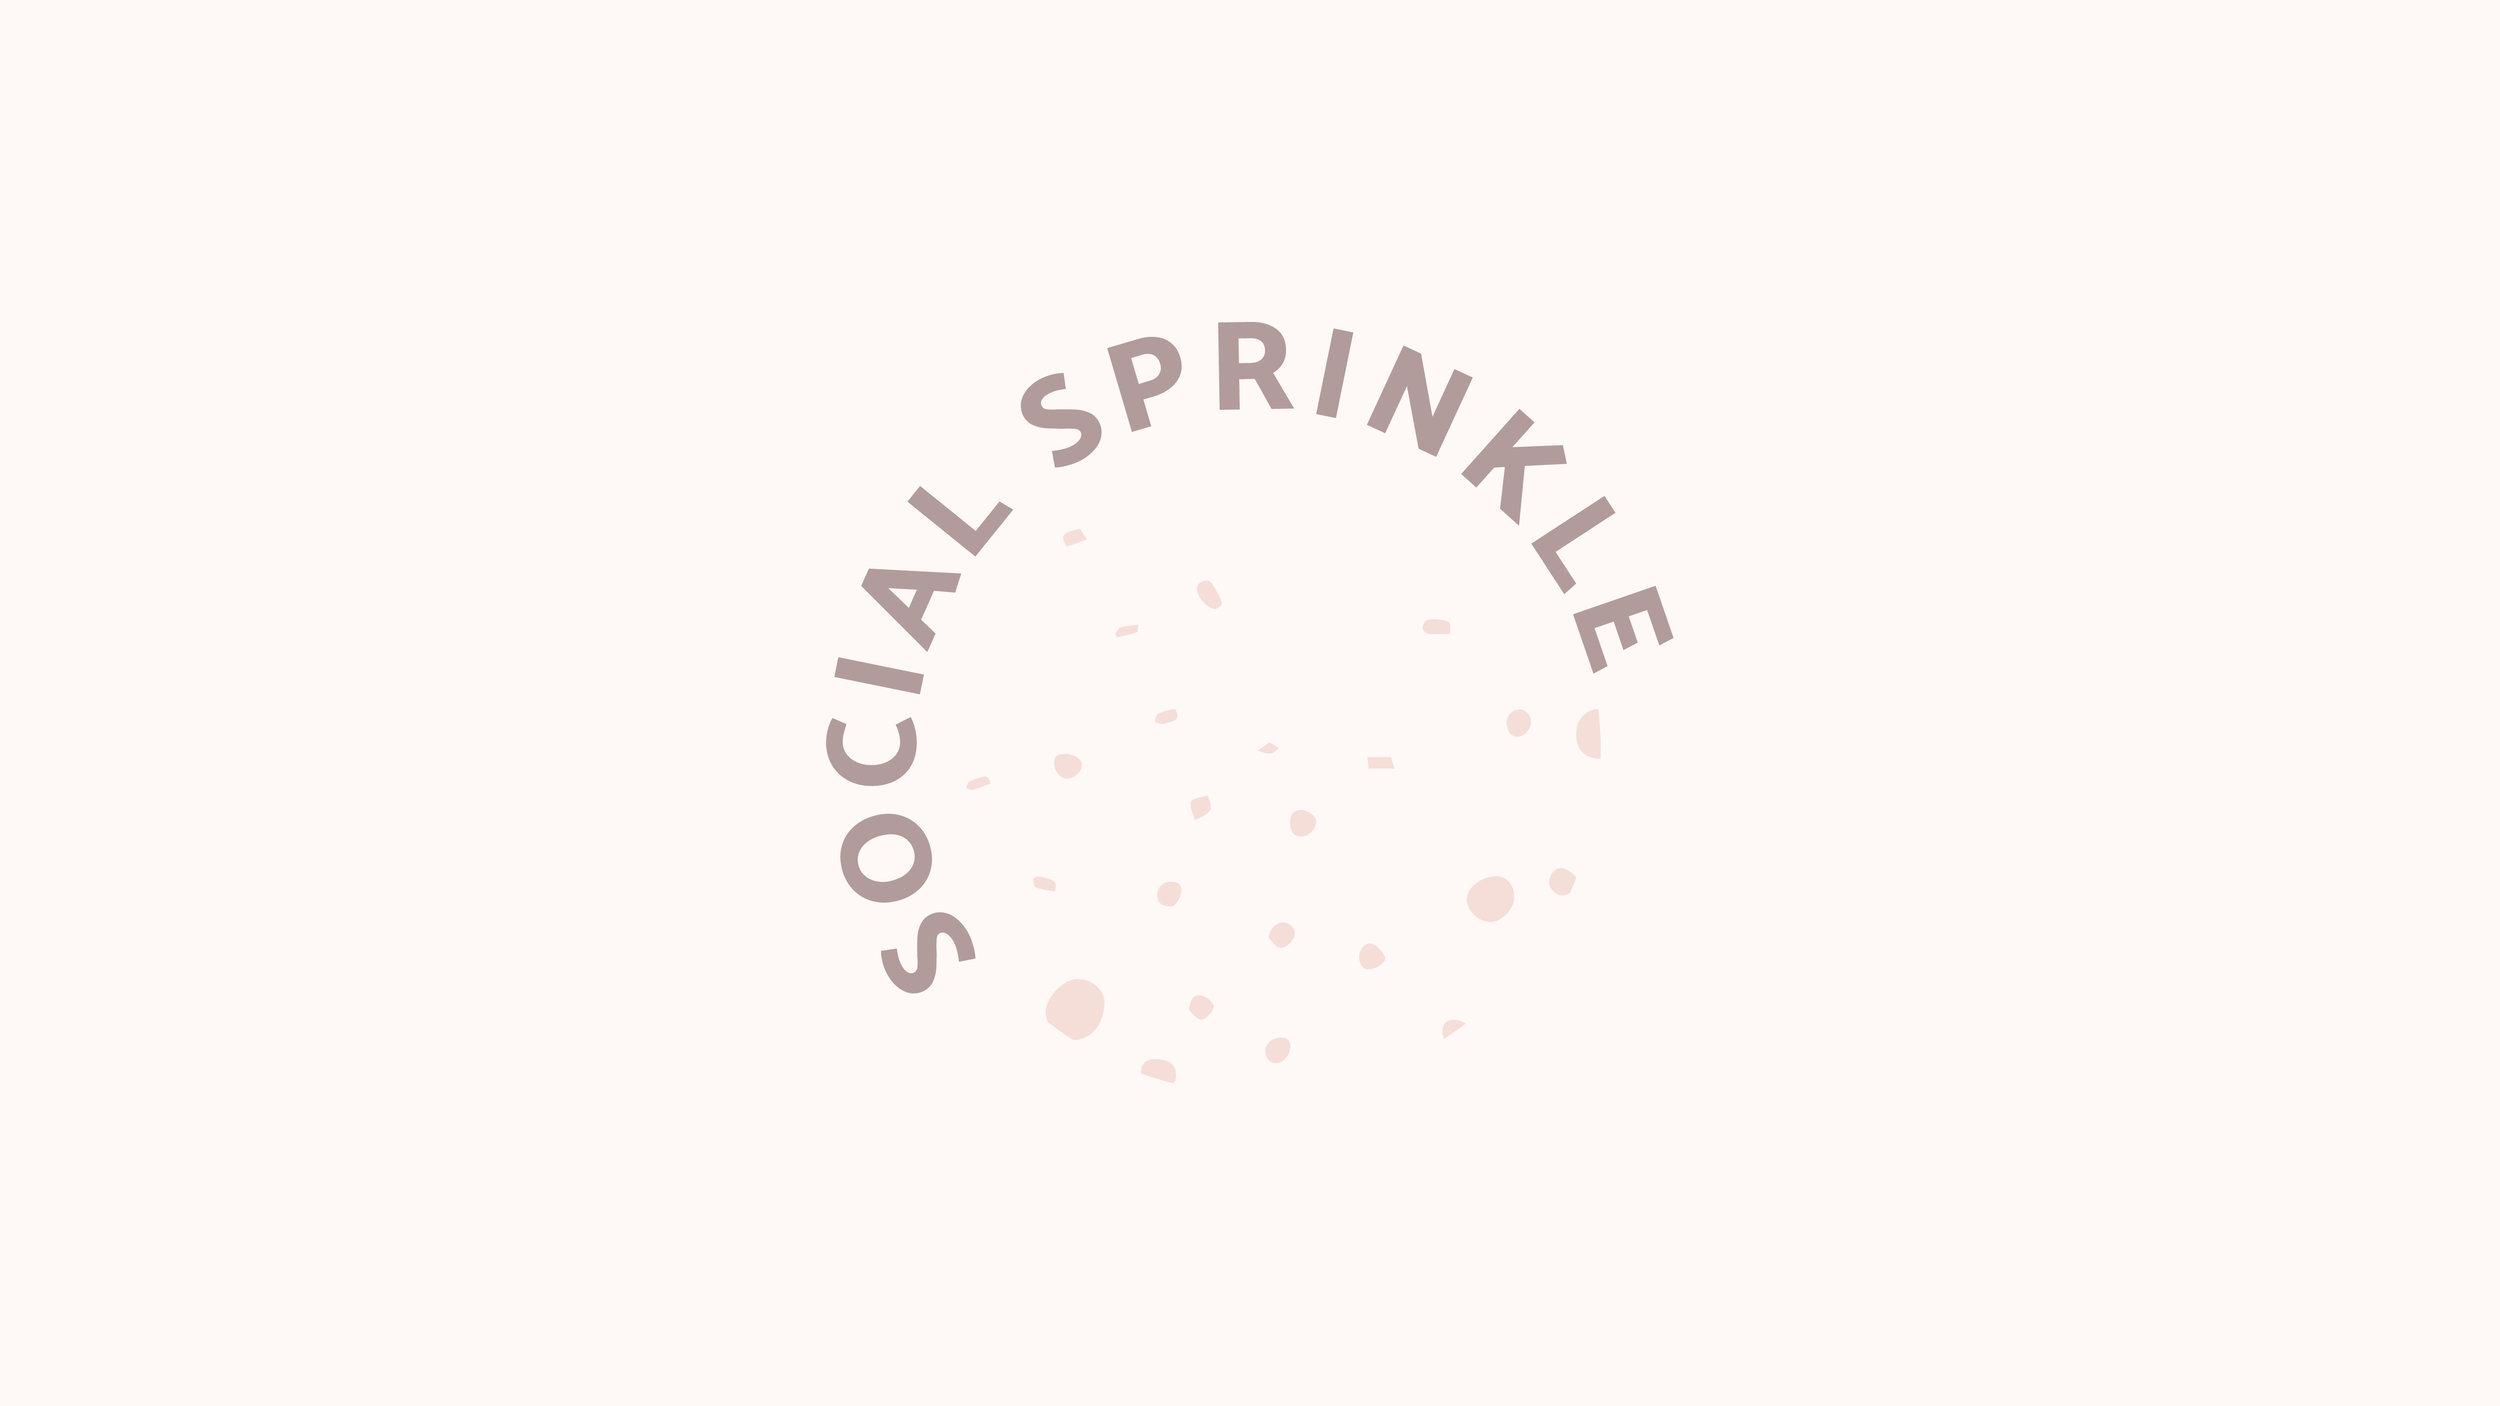 Social+Sprinkle-02.jpg